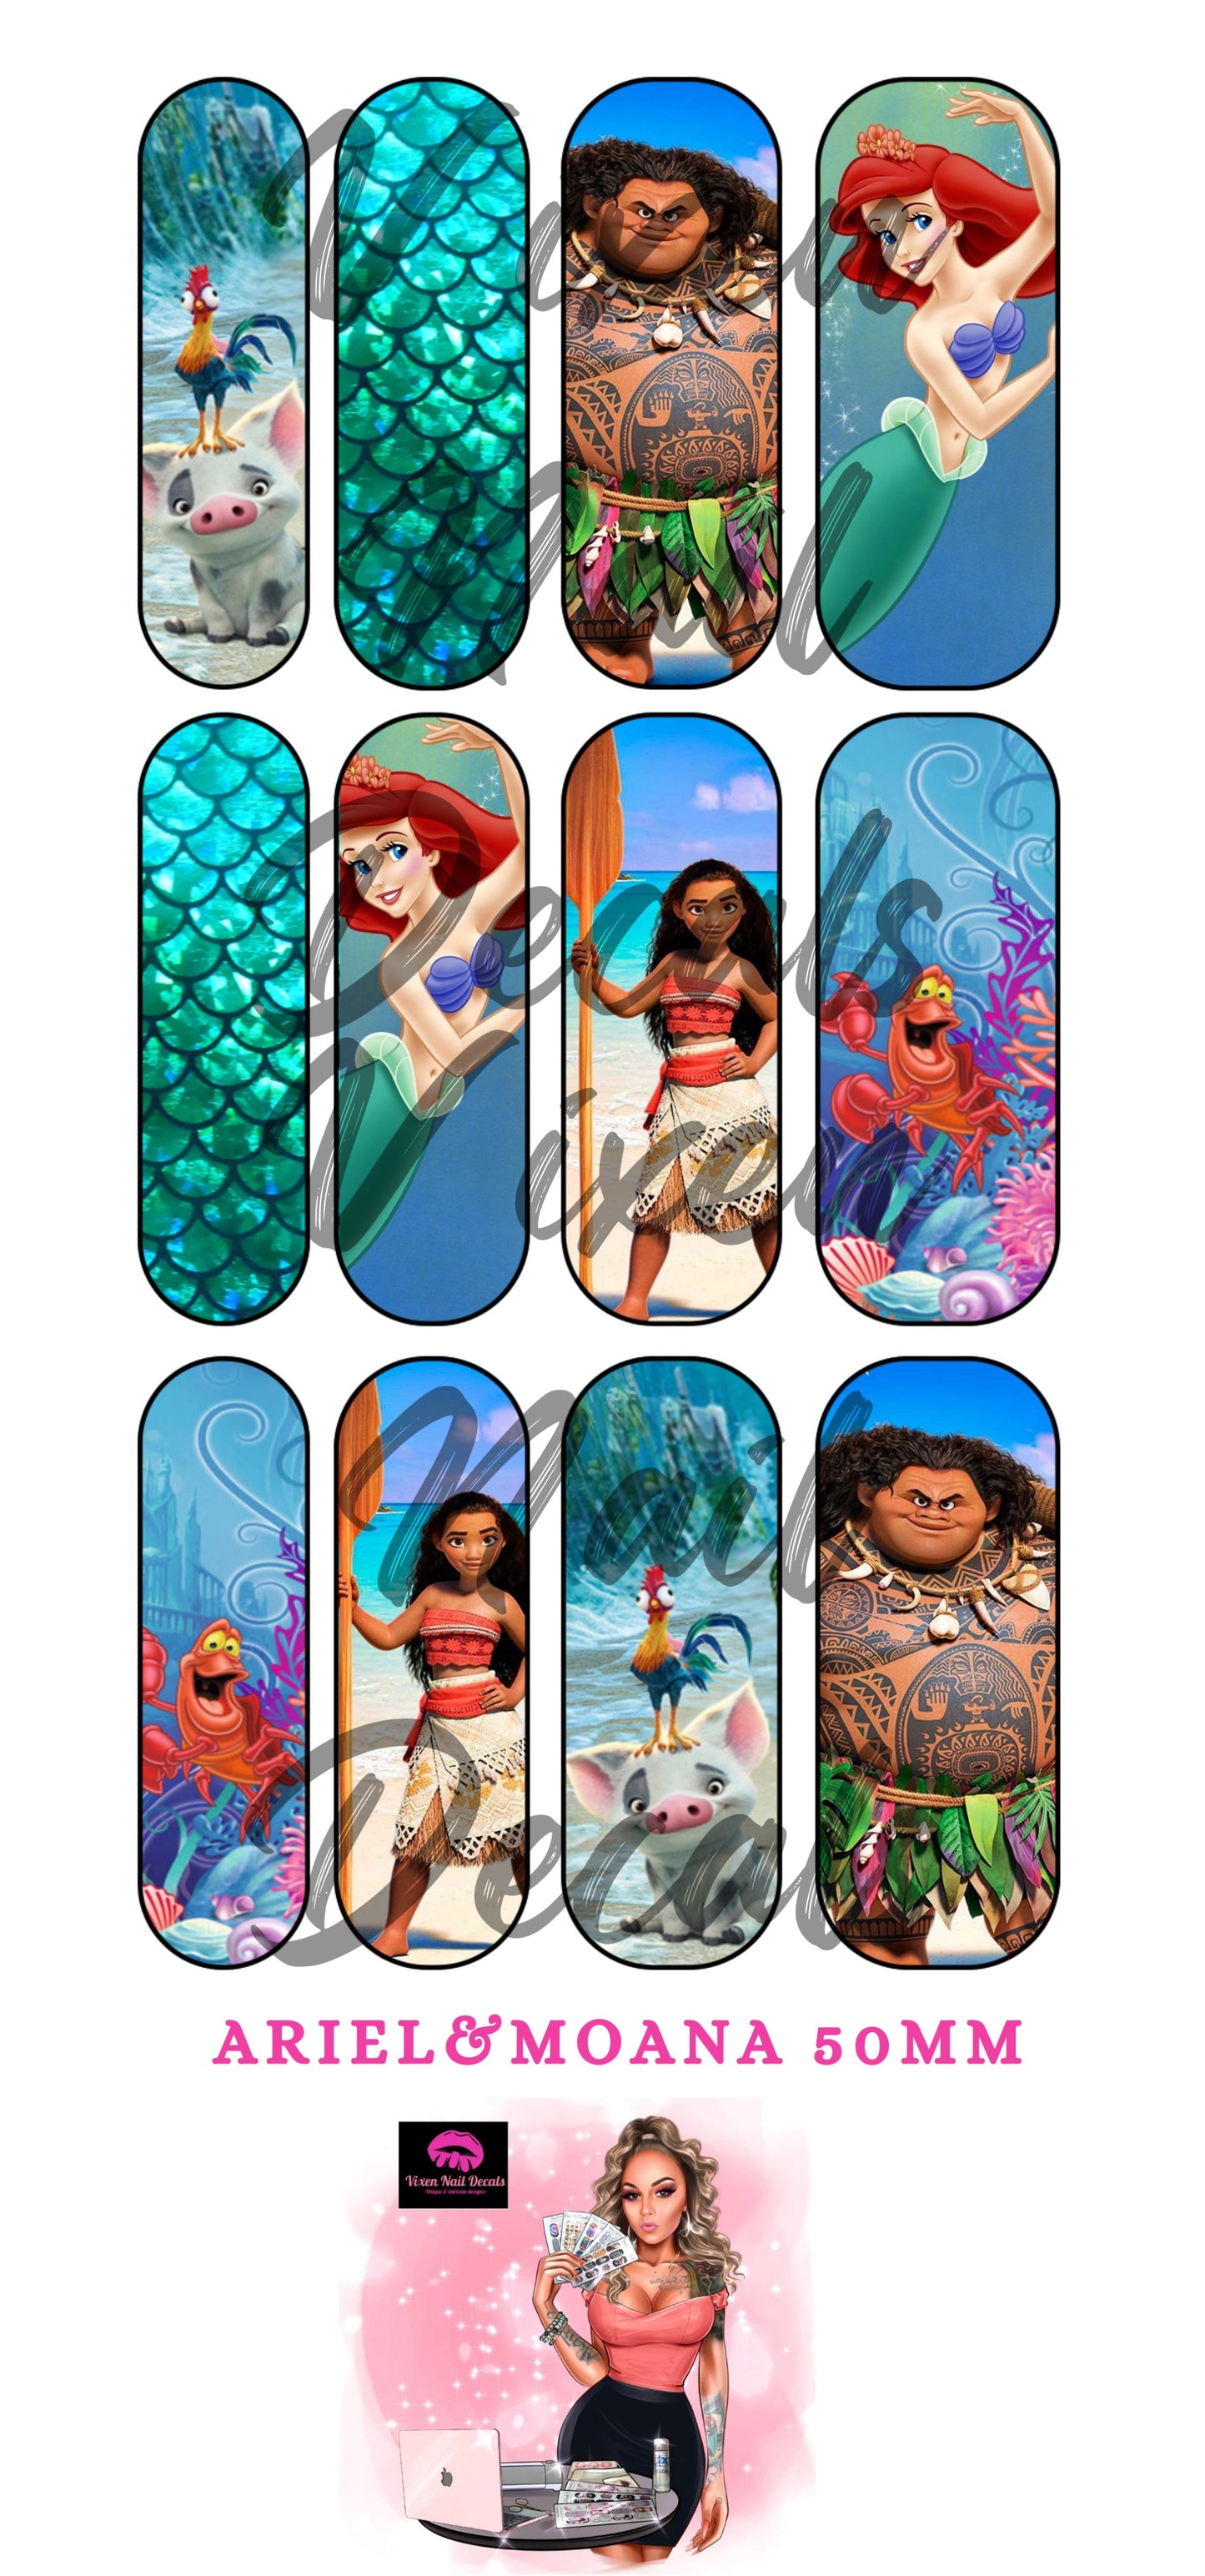 Lil’ Mermaid- Tropical Princess Waterslide Nail Decals - Nail Wraps - Nail Designs - Nail Art